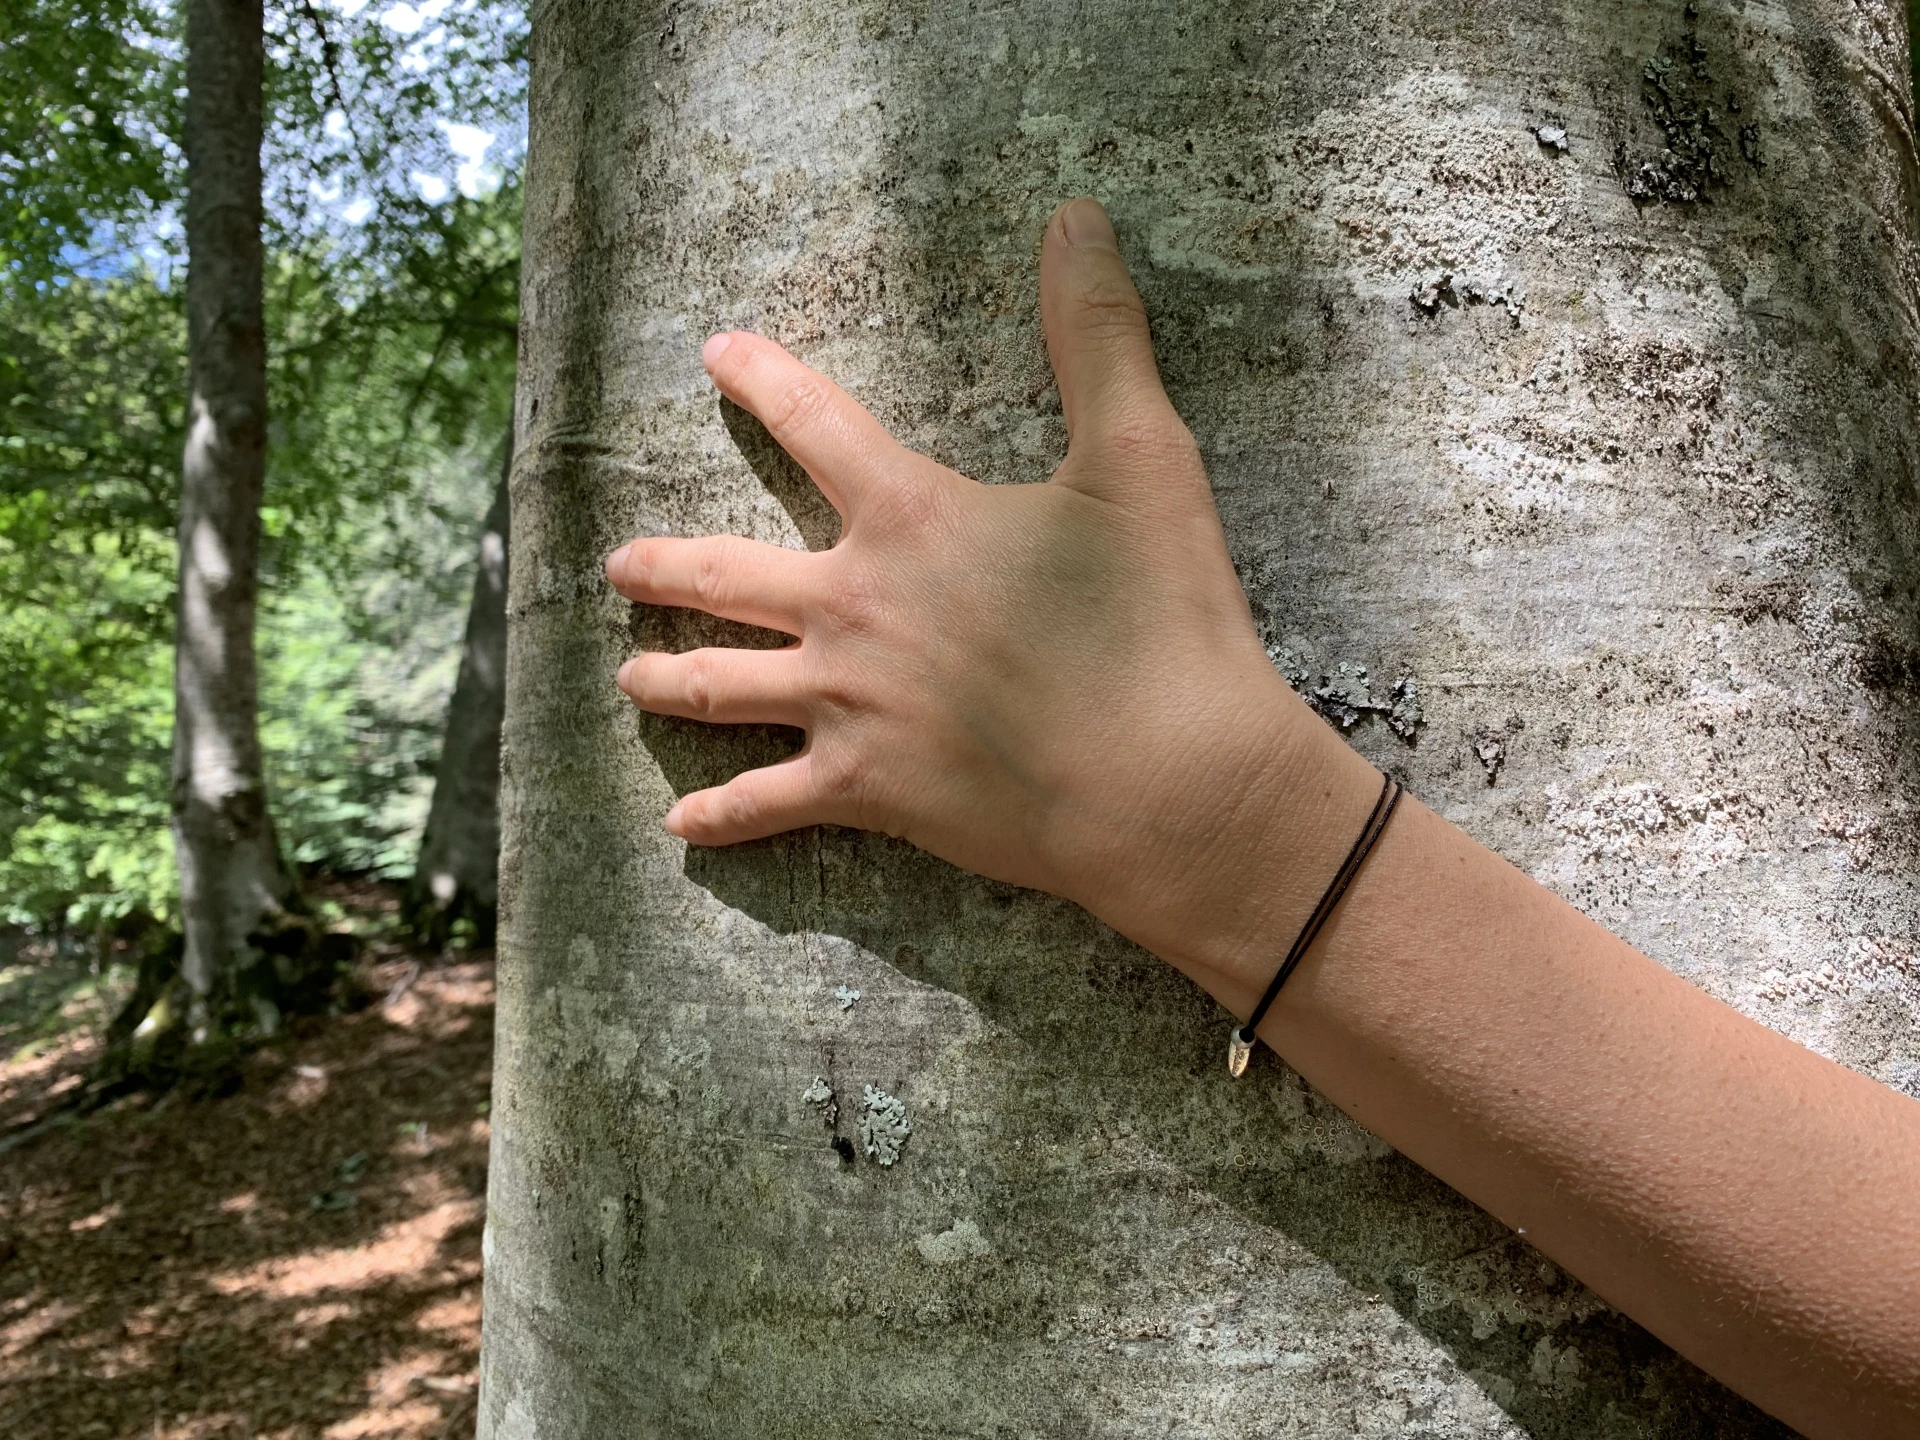 Noi e la natura: forest therapy, tree hugging